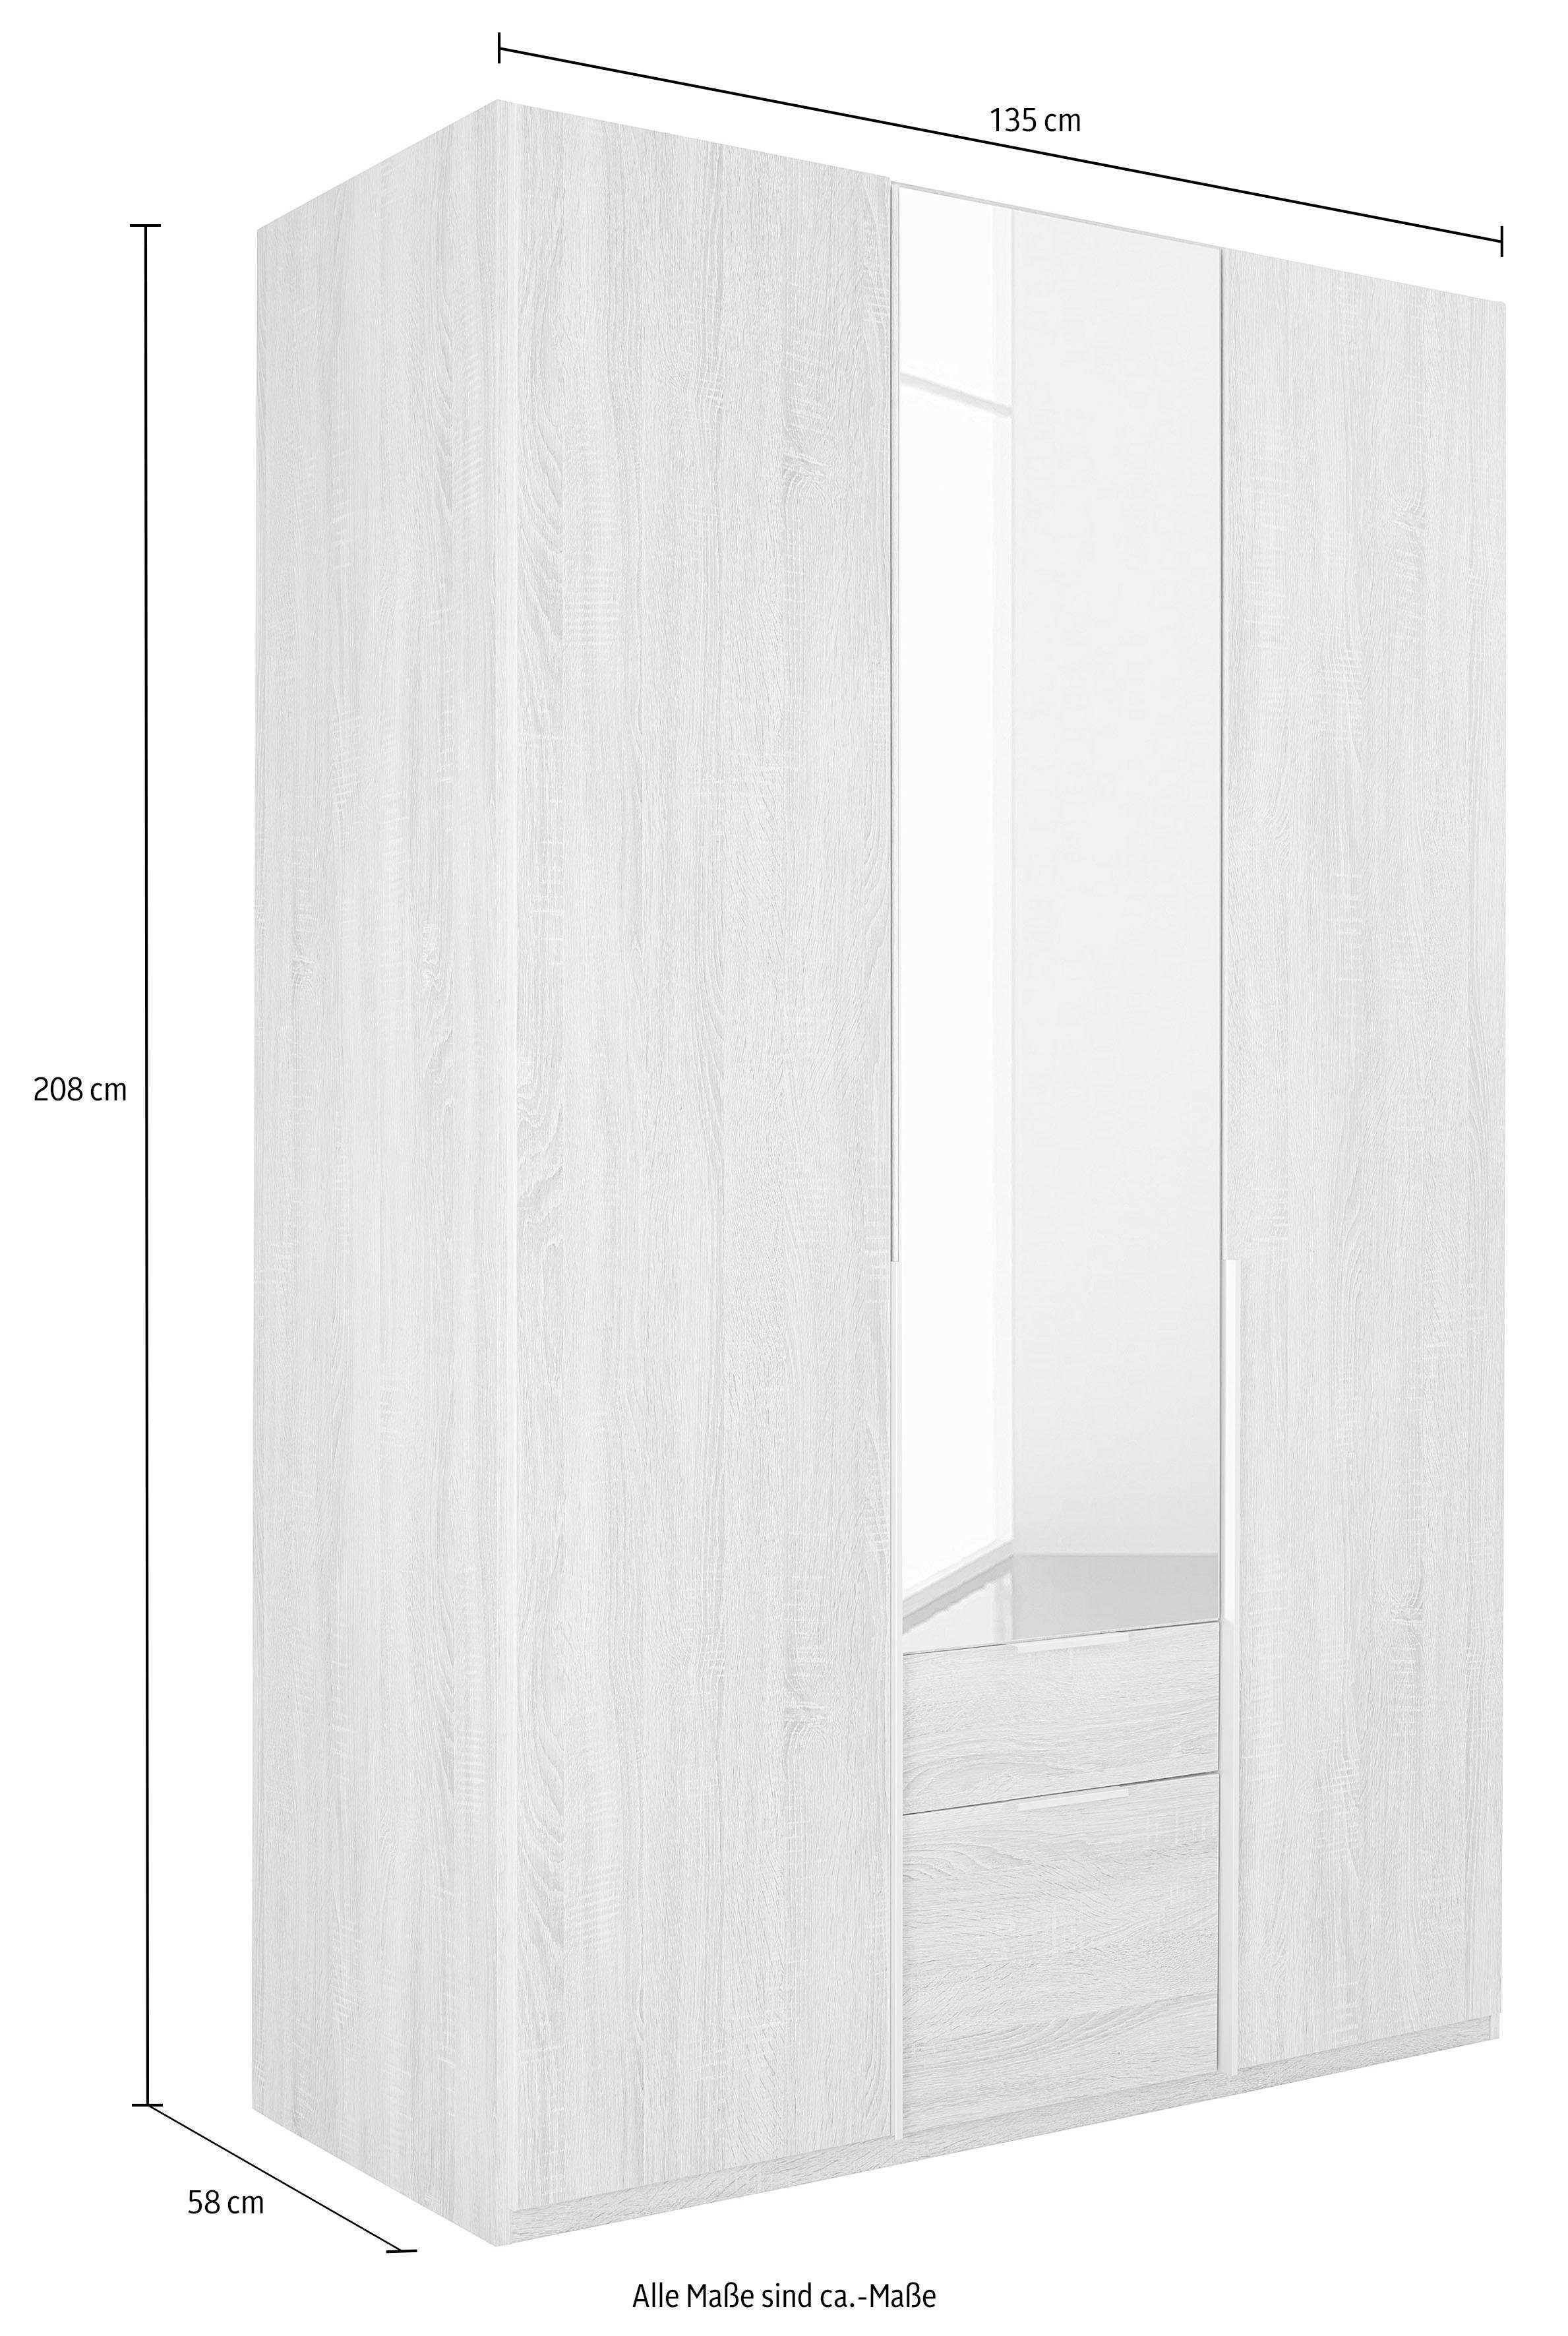 Wimex Kleiderschrank Spiegeltür mit struktureichefarben hell/Spiegel New York